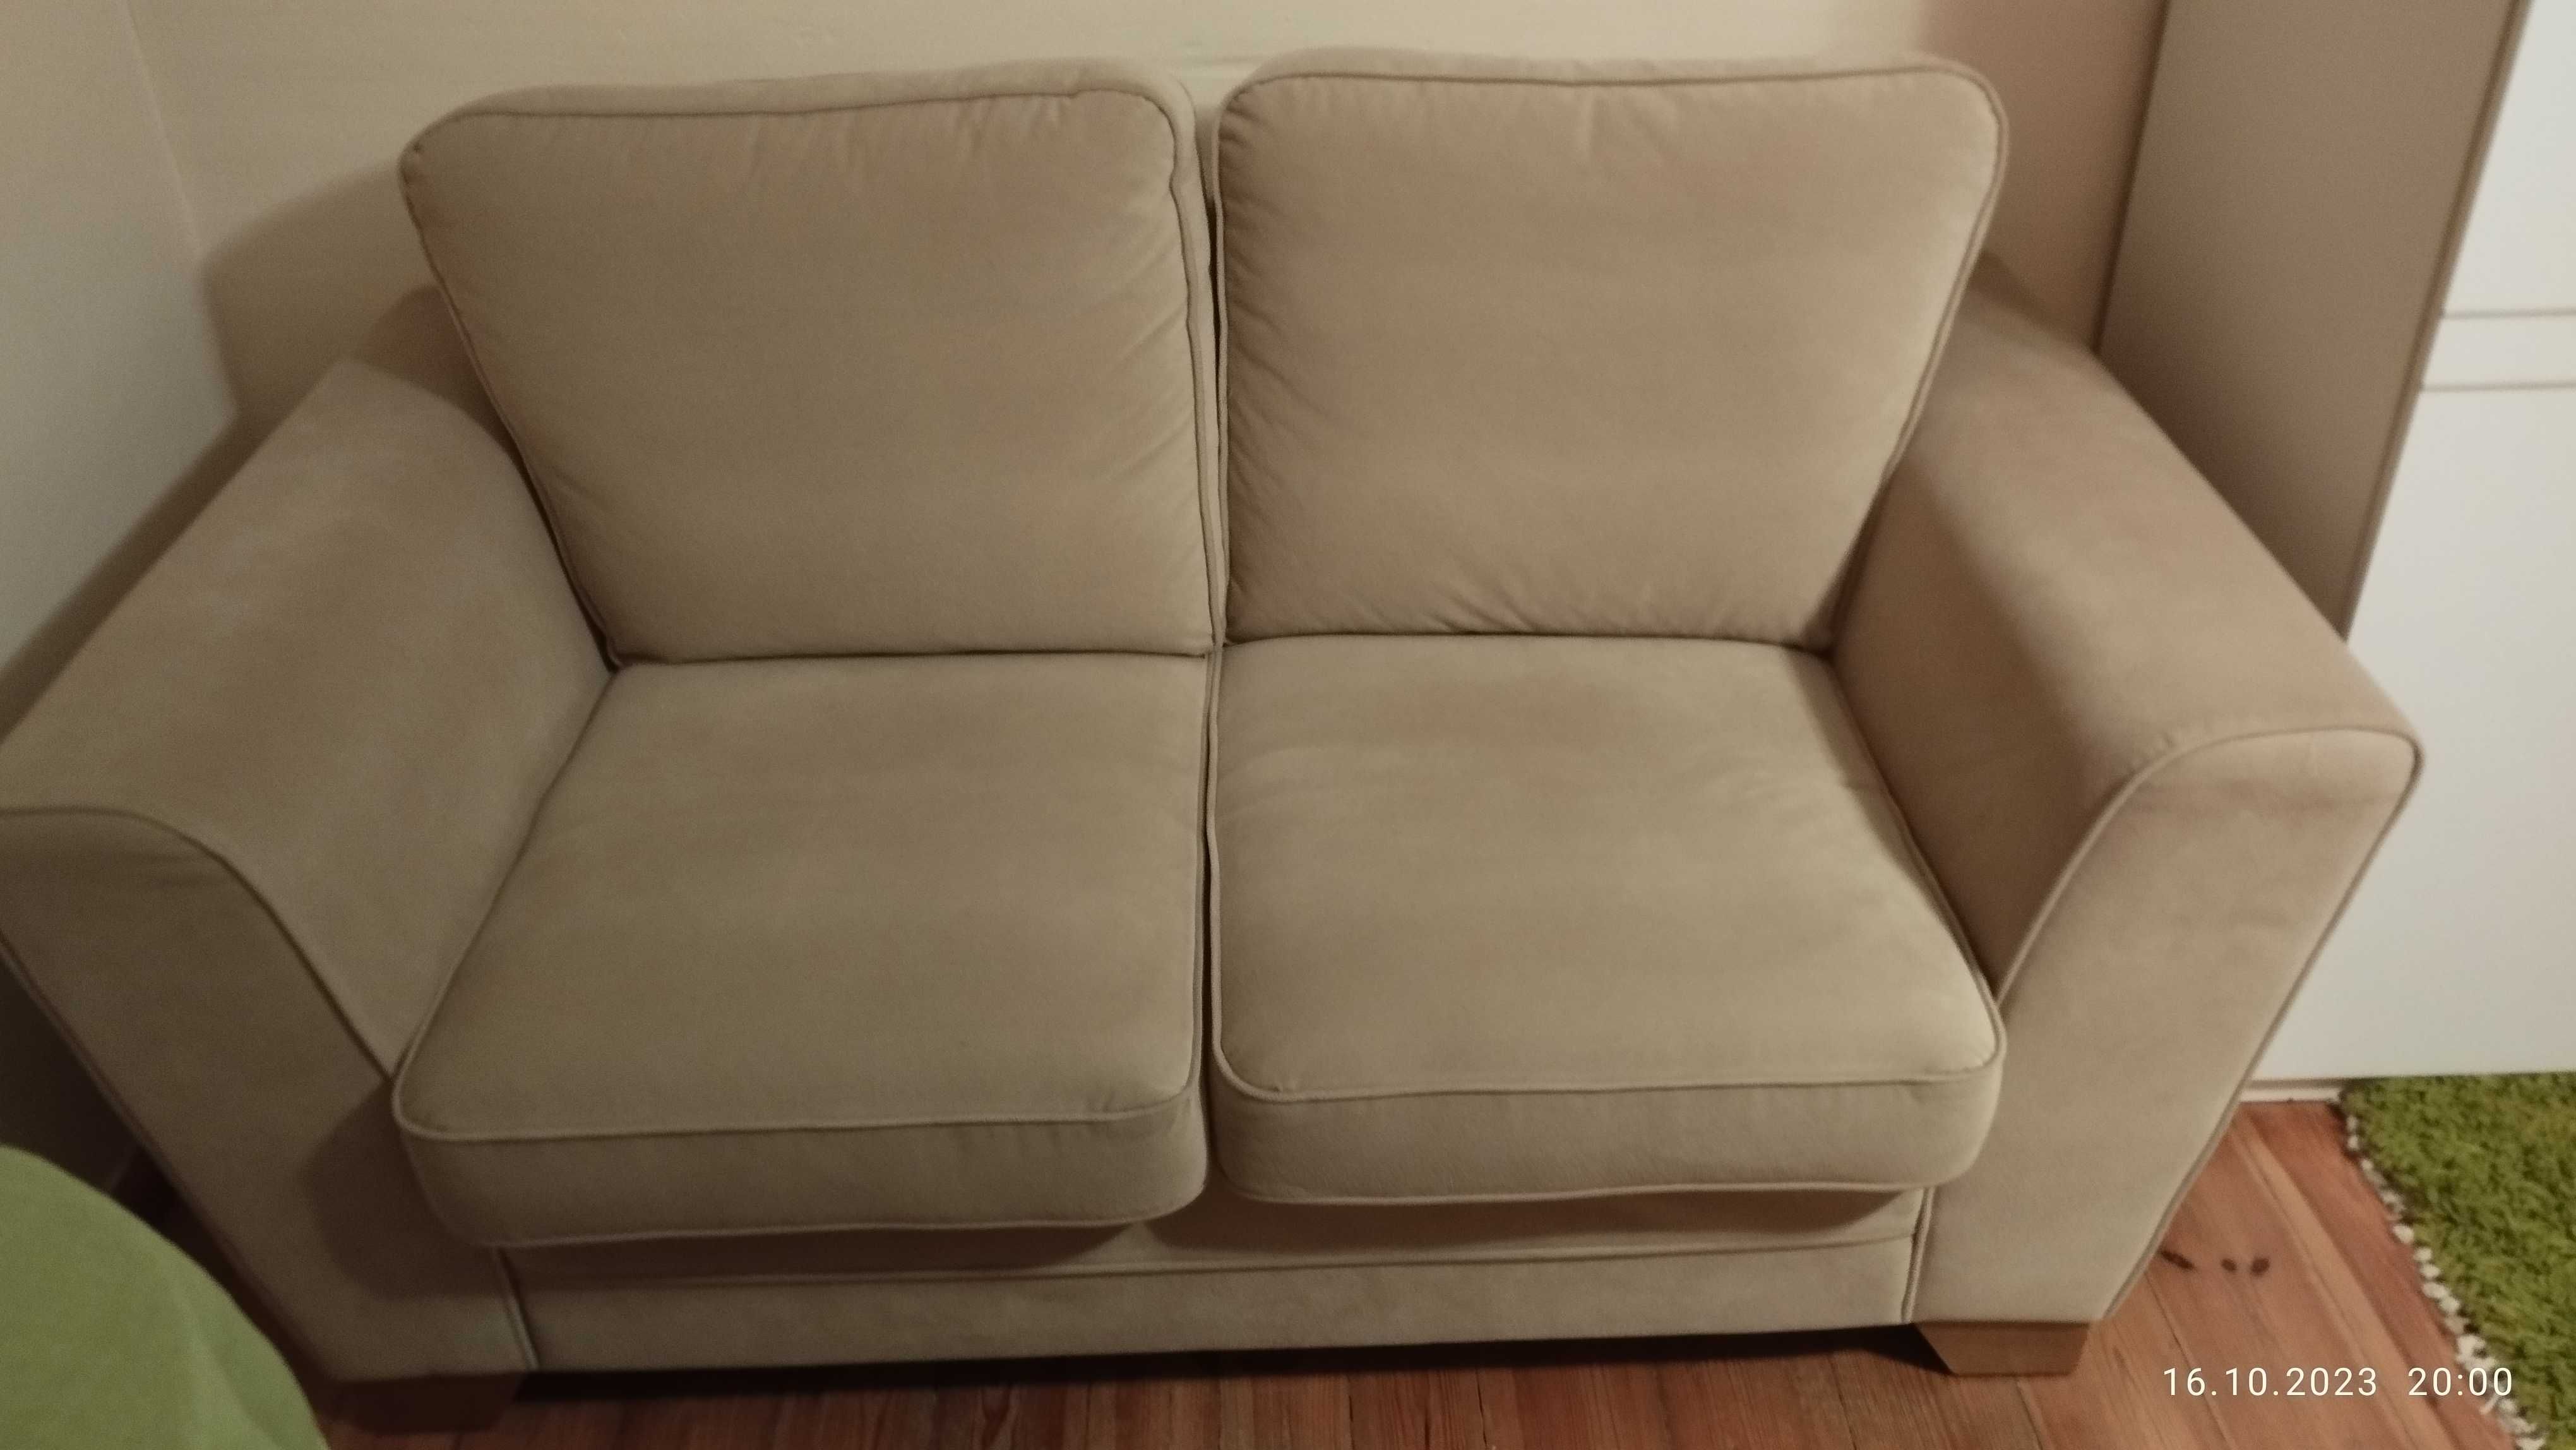 Sofa , kanapa dwuosobowa - nie rozkładana.Tylko do siedzenia.